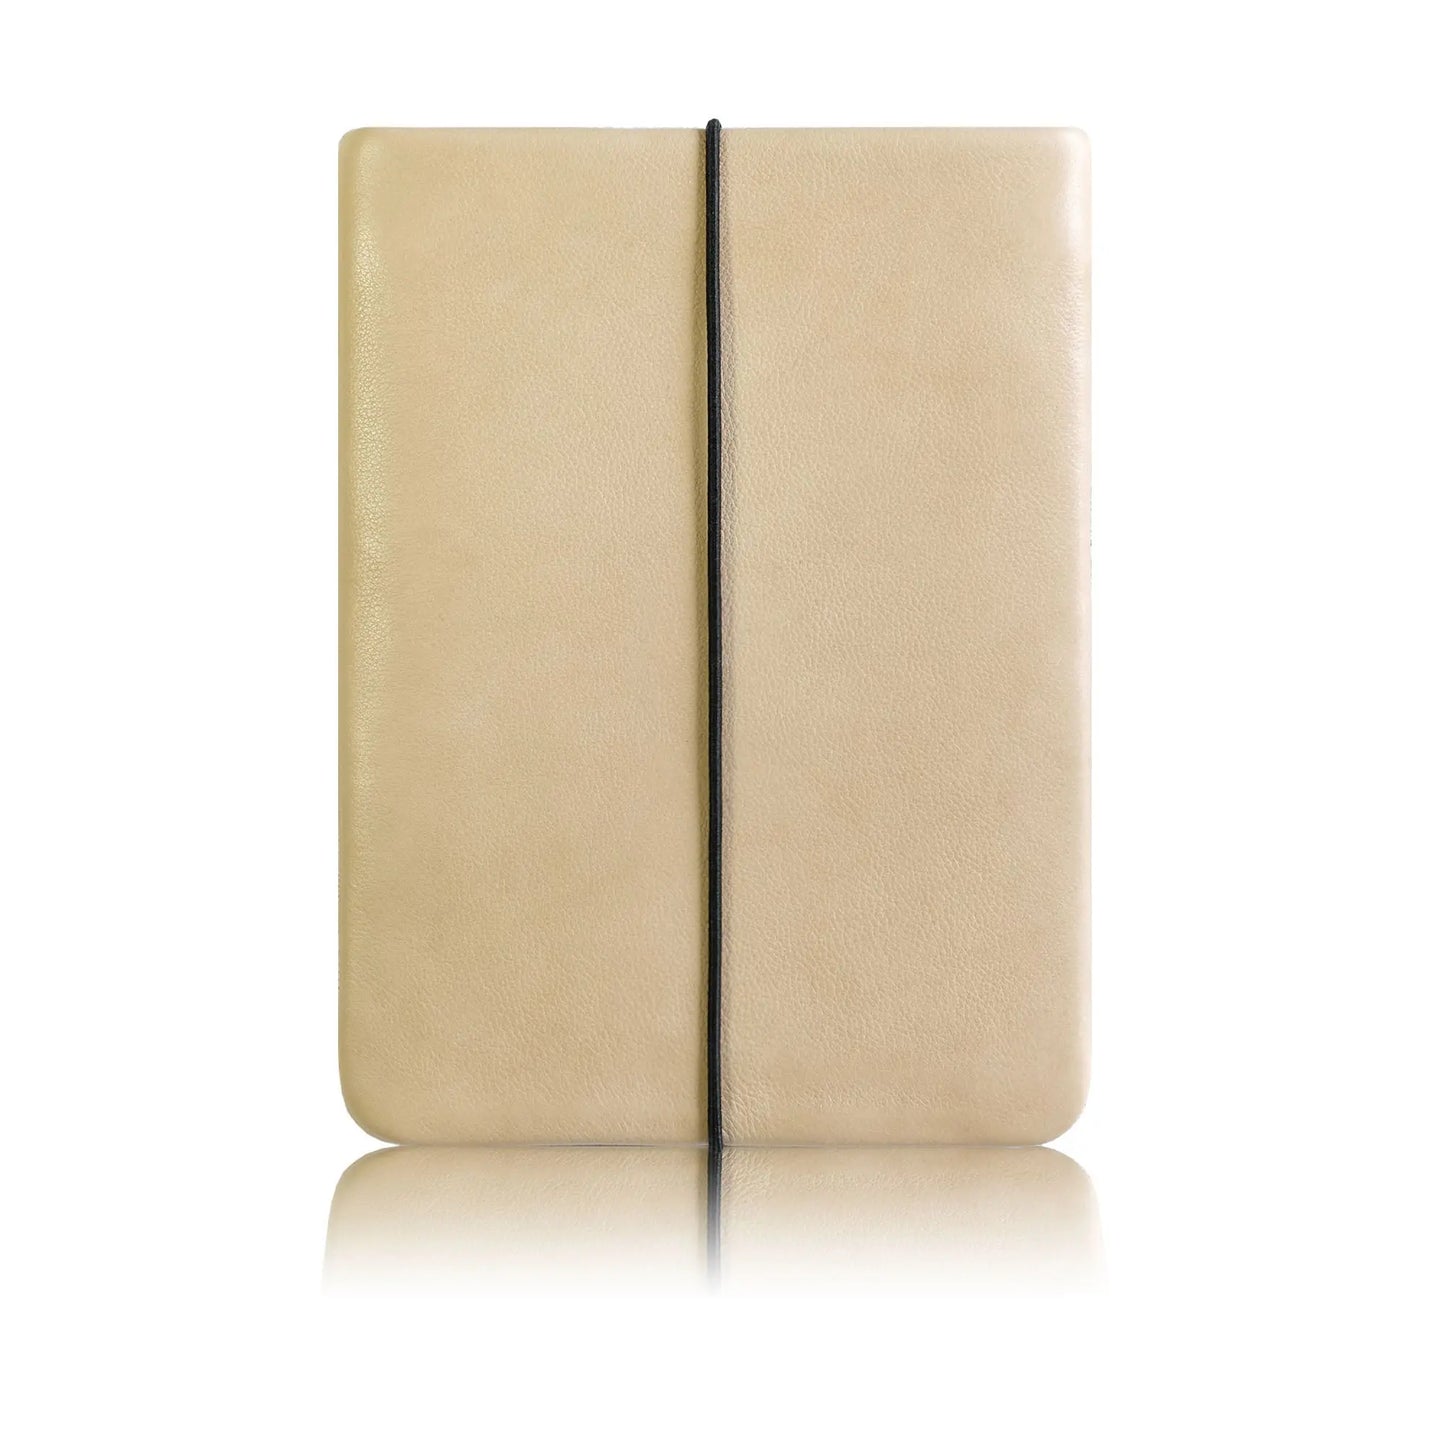 Notebook Hülle aus Leder in beige mit schwarzem Verschlussgummi